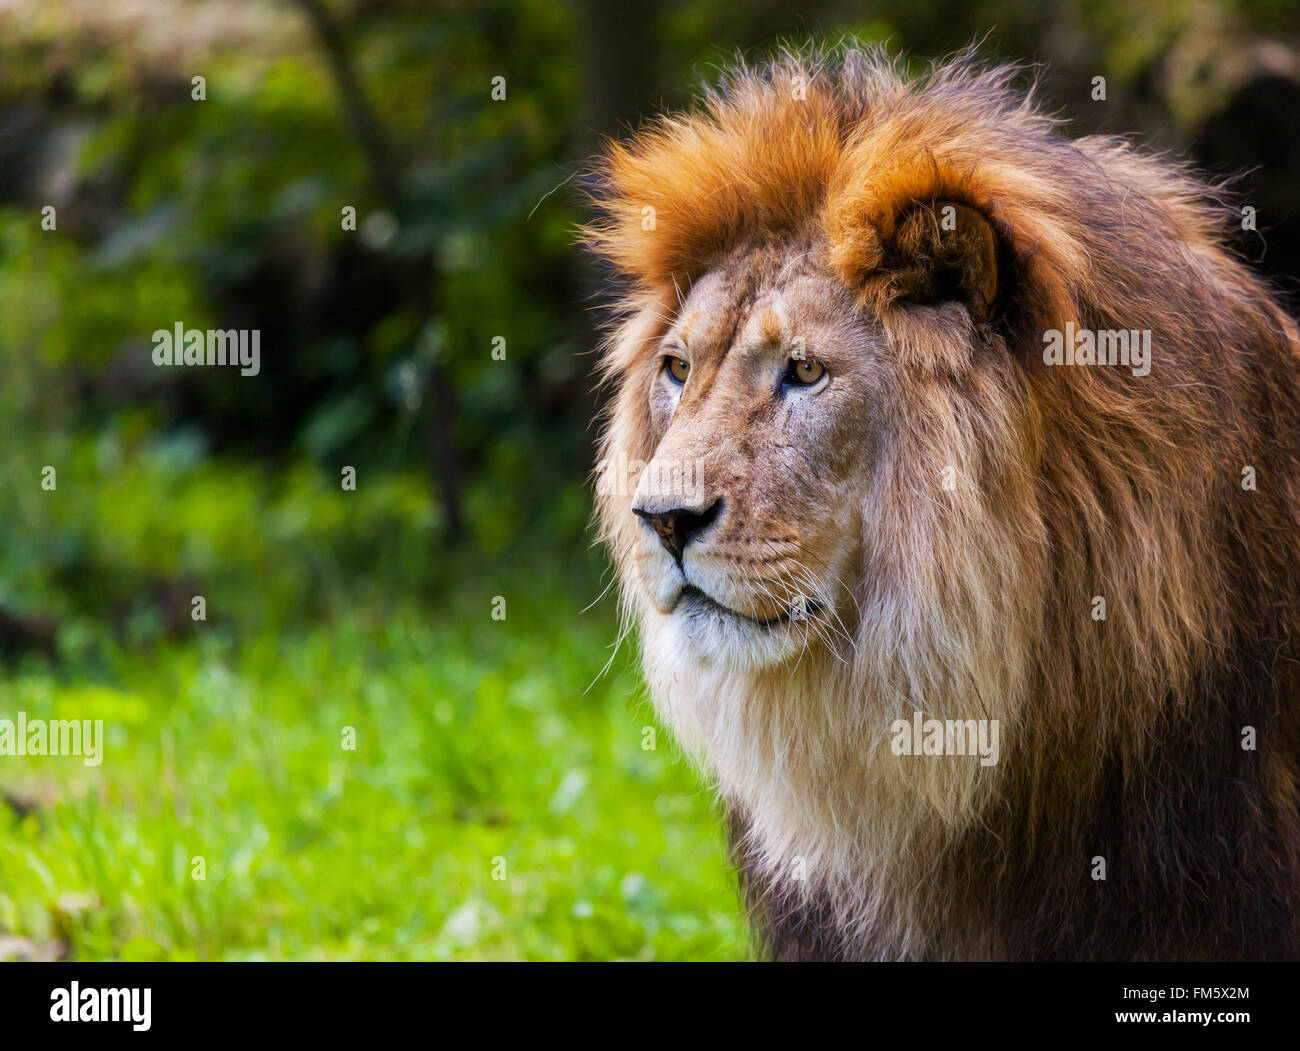 Lion regarde à gauche dans un portrait Banque D'Images